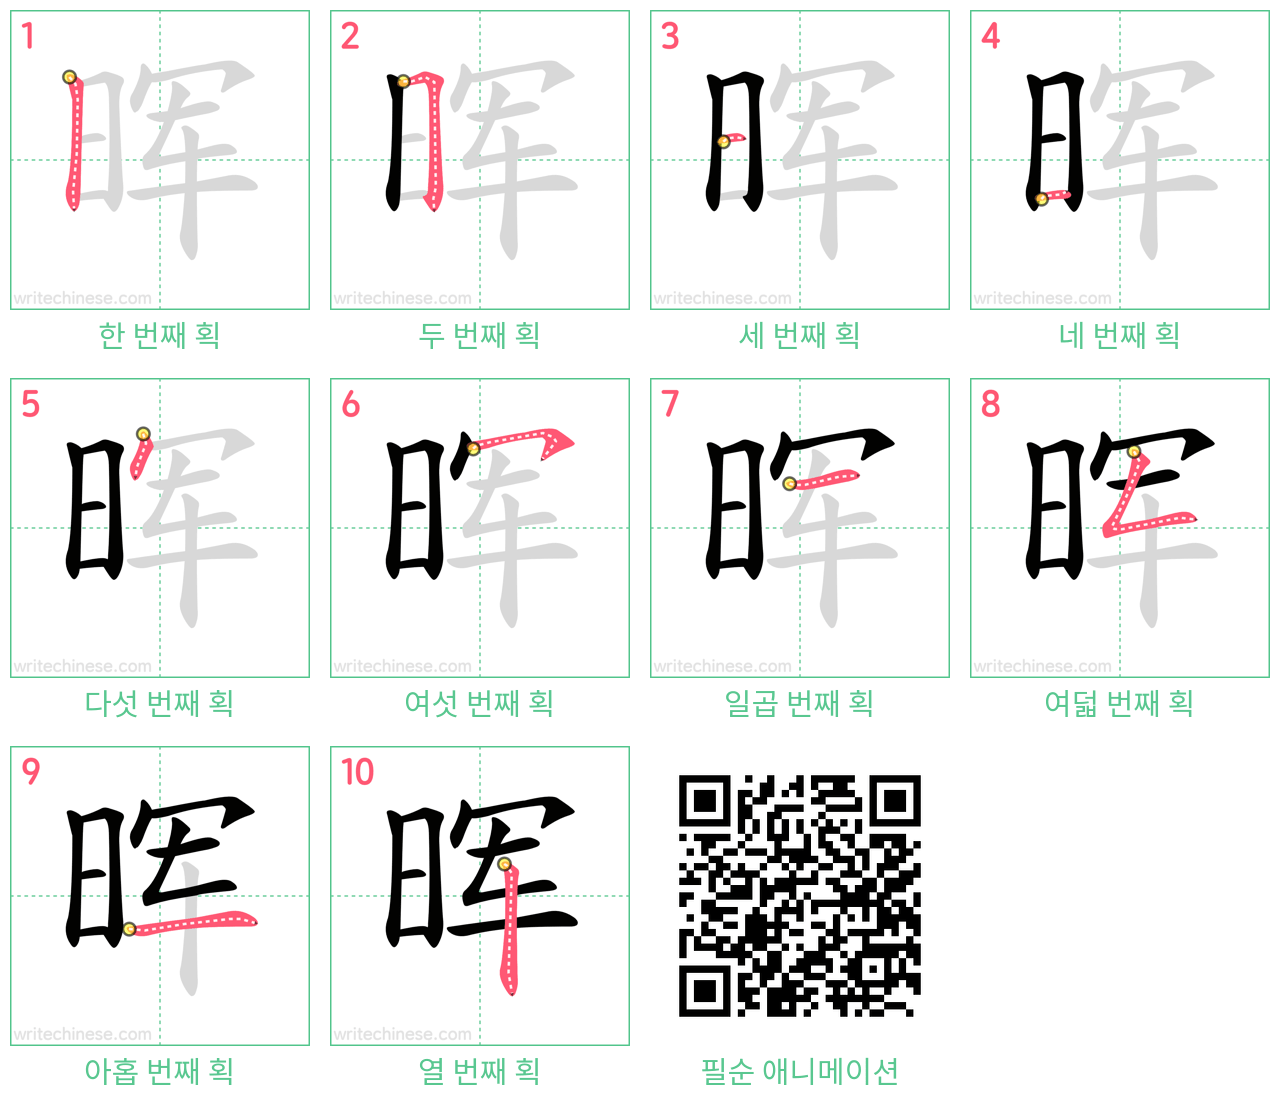 晖 step-by-step stroke order diagrams